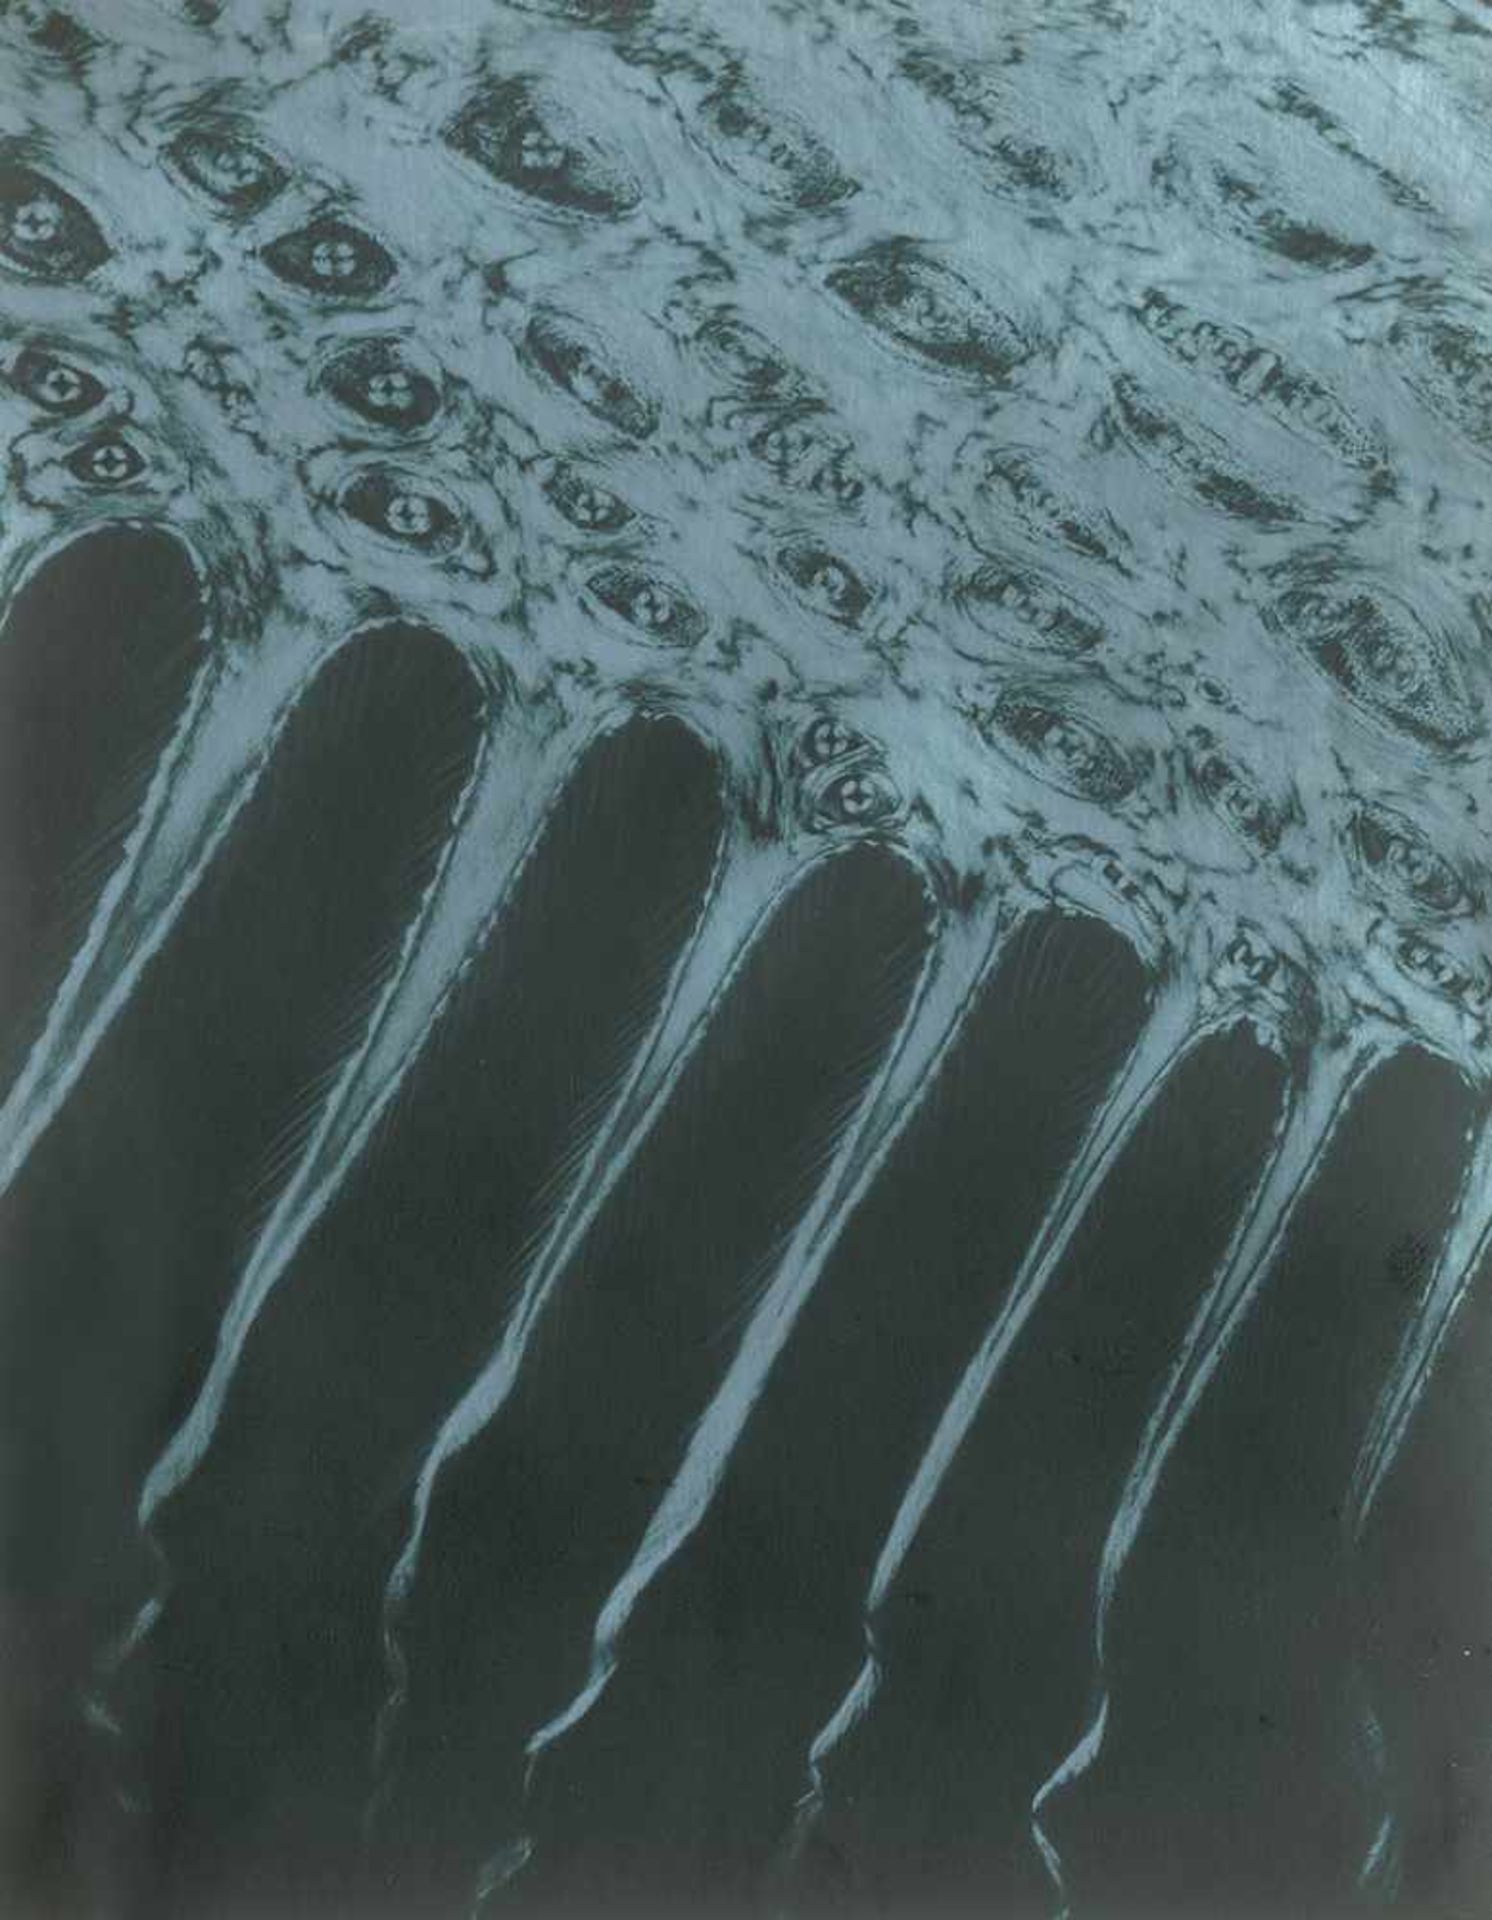 Albin-Guillot, Laure: Micrographie décorative